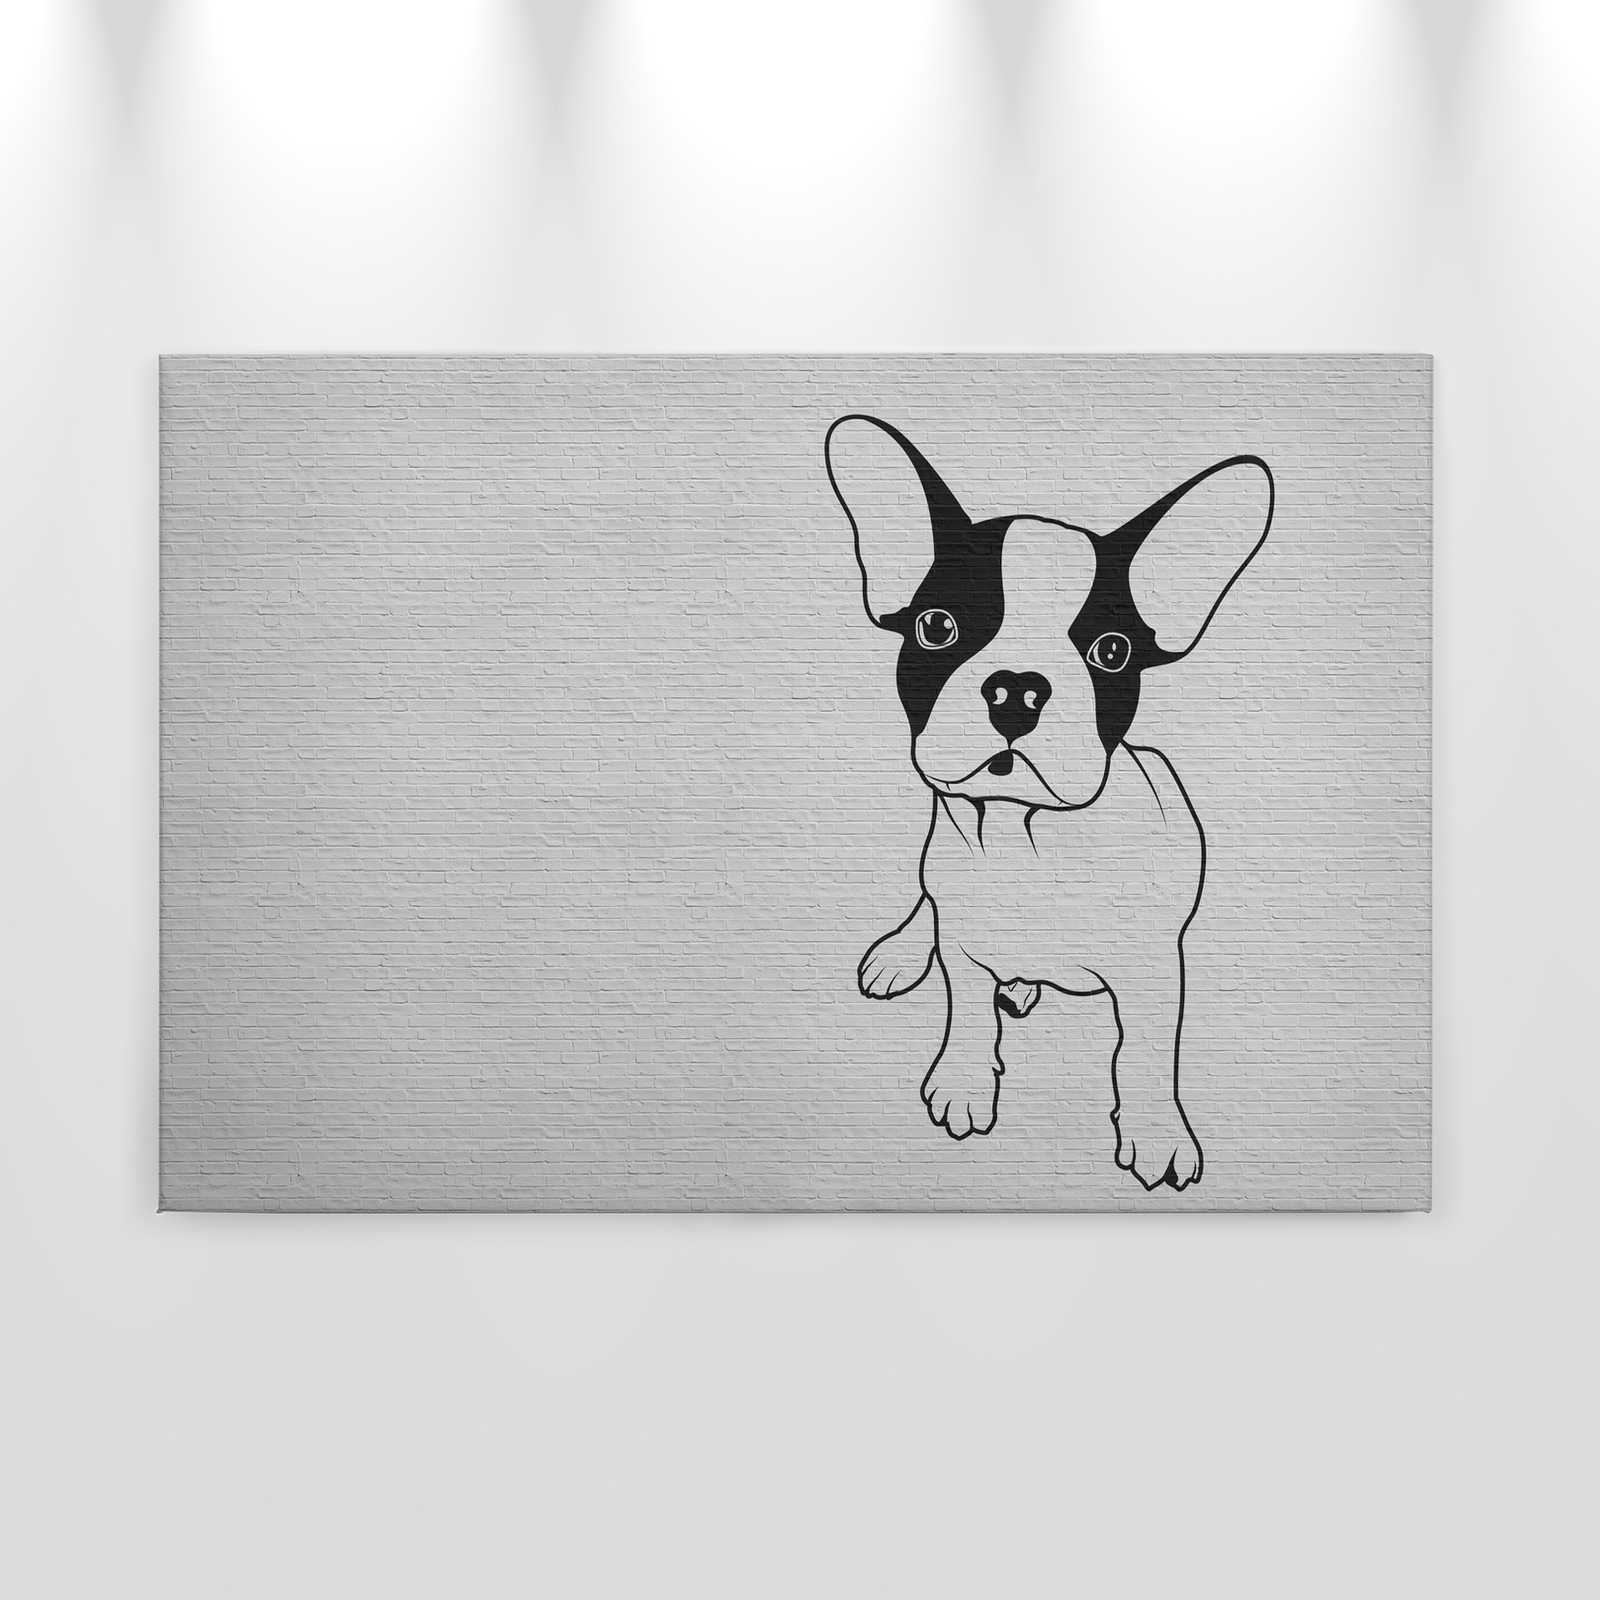             Tattoo you 2 - Leinwandbild französische Bulldogge, Schwarz-Weiß – 0,90 m x 0,60 m
        